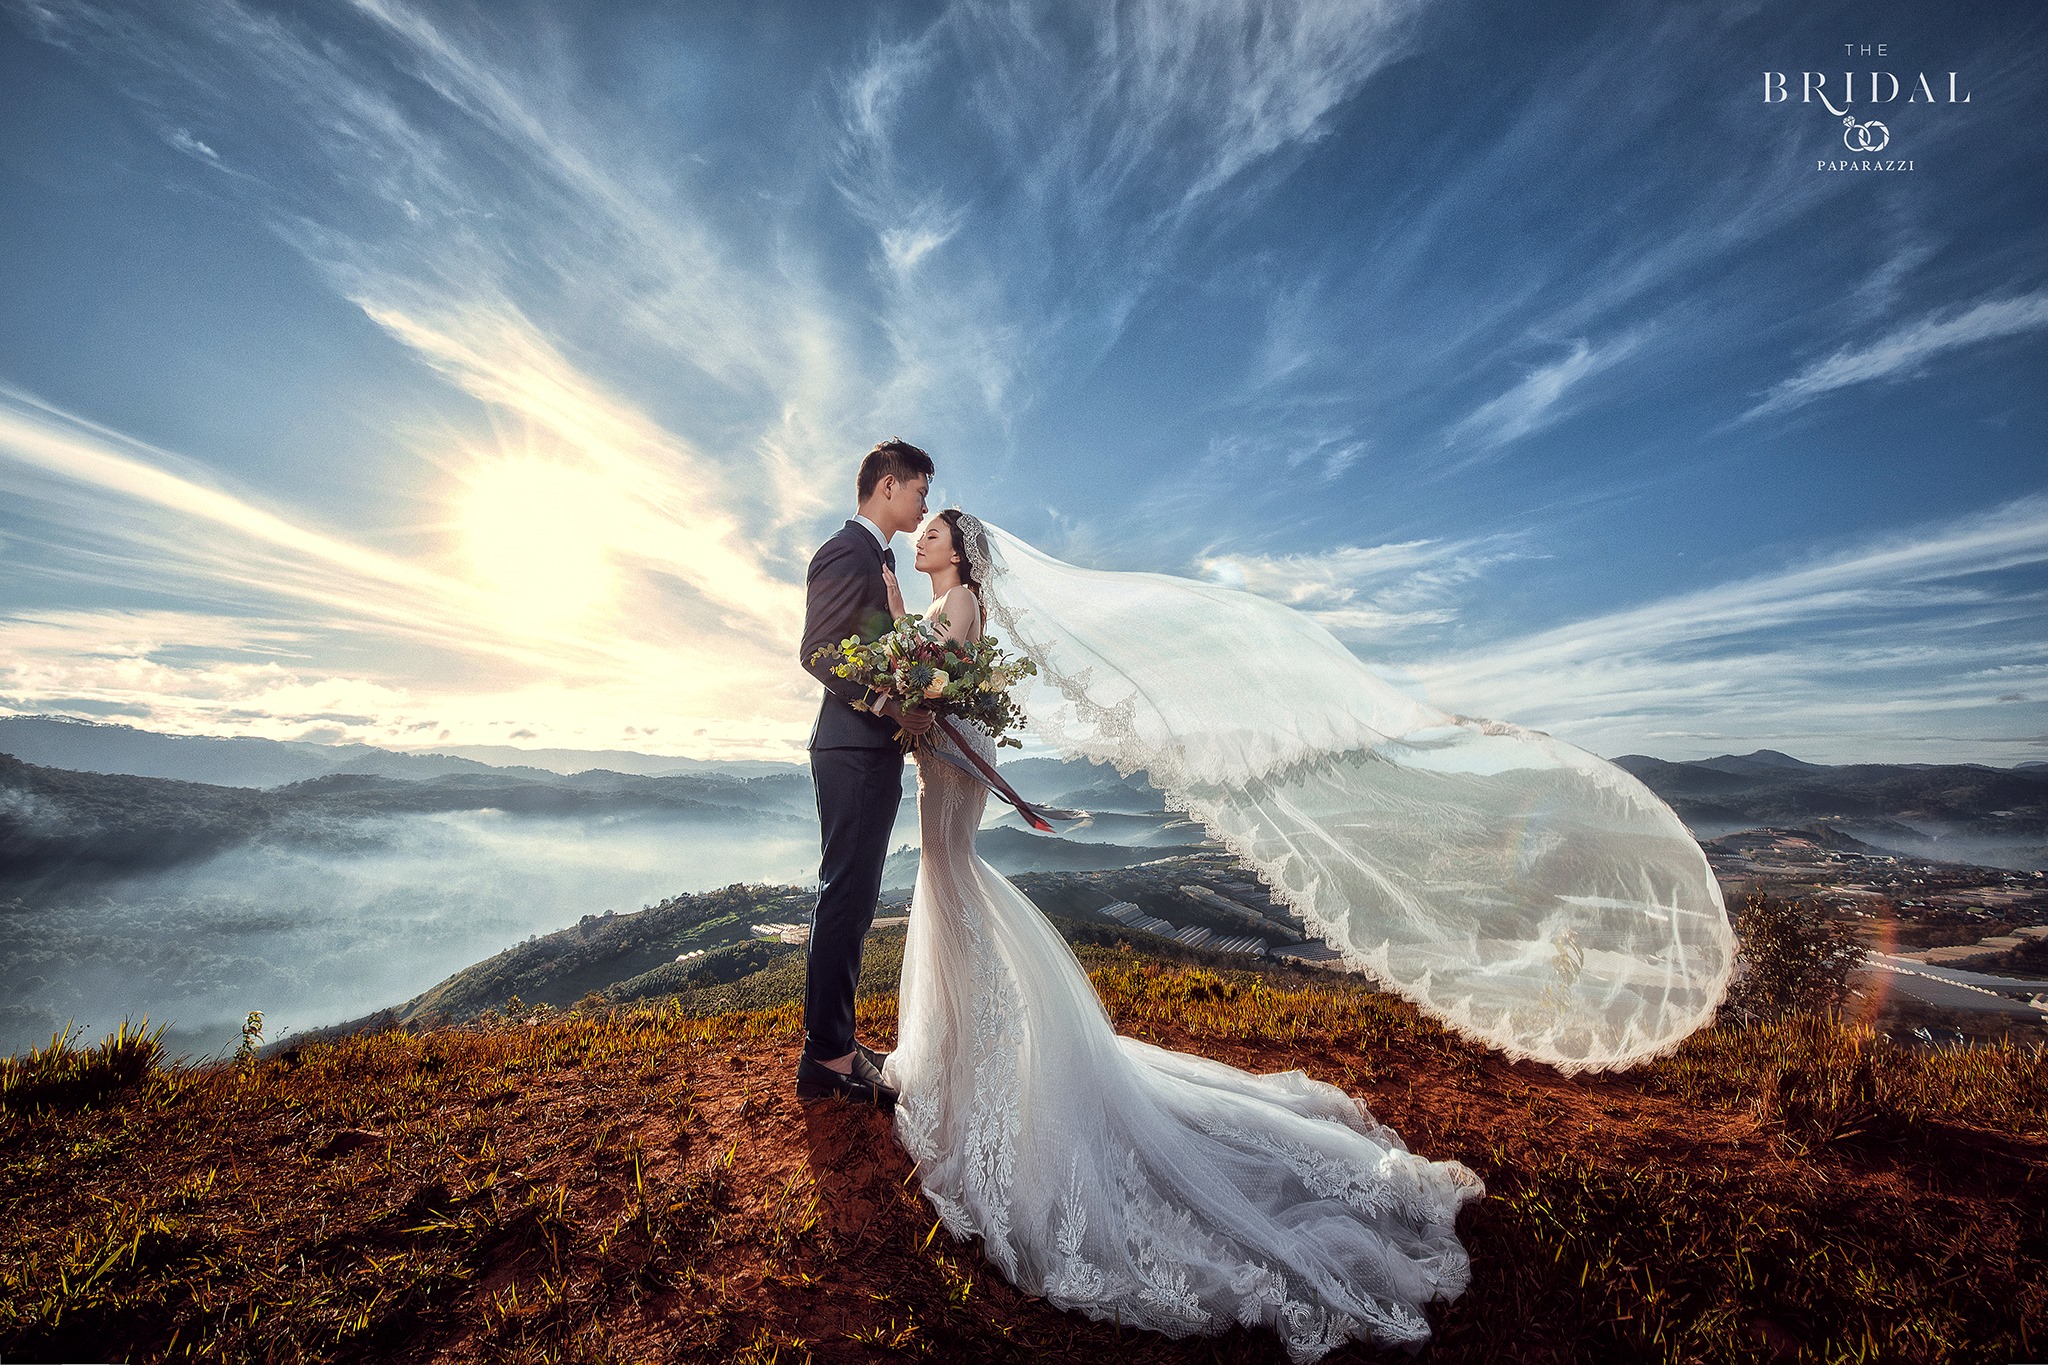 Nếu bạn đang ở Bảo Lộc và muốn tạo ra những bức ảnh cưới đẹp nhất, hãy đến với Studio chụp ảnh cưới Bảo Lộc! Với đội ngũ nhiếp ảnh chuyên nghiệp và trang thiết bị cao cấp, chúng tôi sẽ giúp bạn lưu giữ những khoảnh khắc ngọt ngào nhất của cuộc đời.